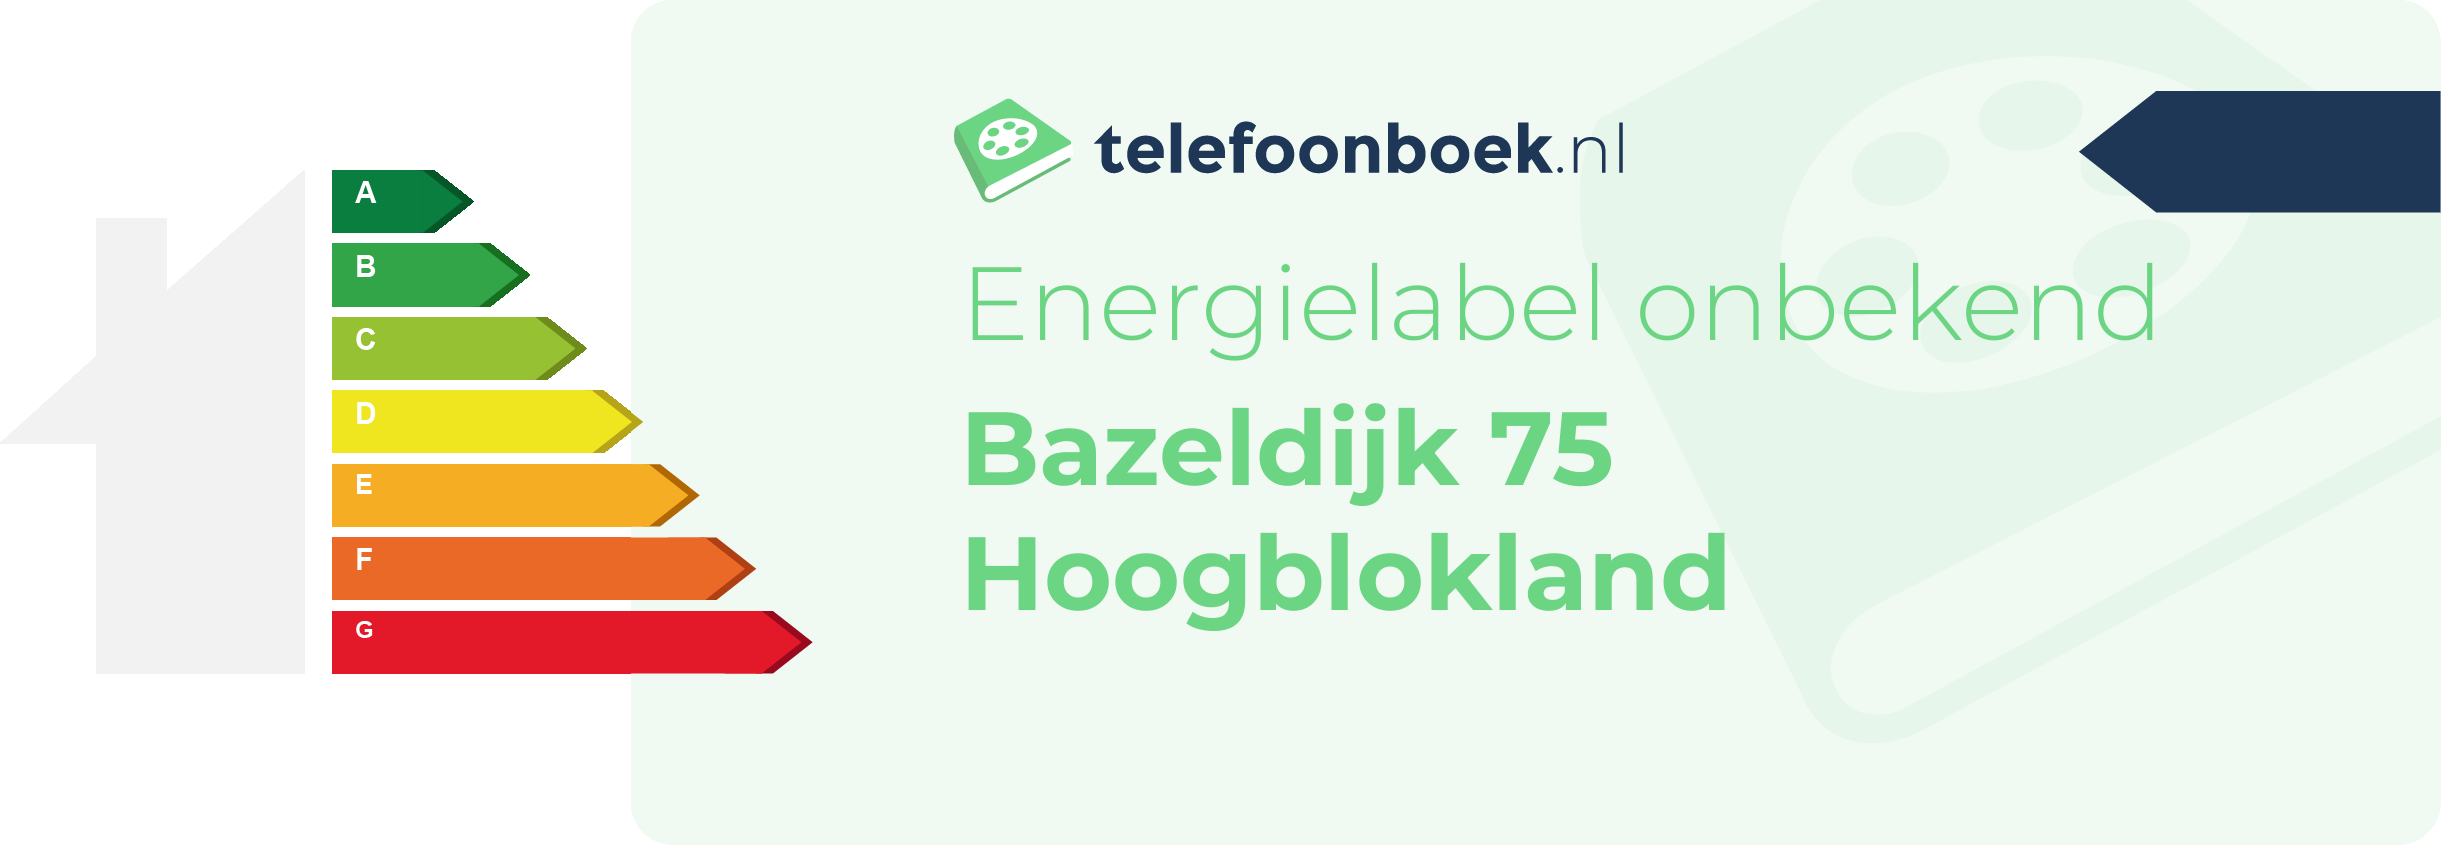 Energielabel Bazeldijk 75 Hoogblokland